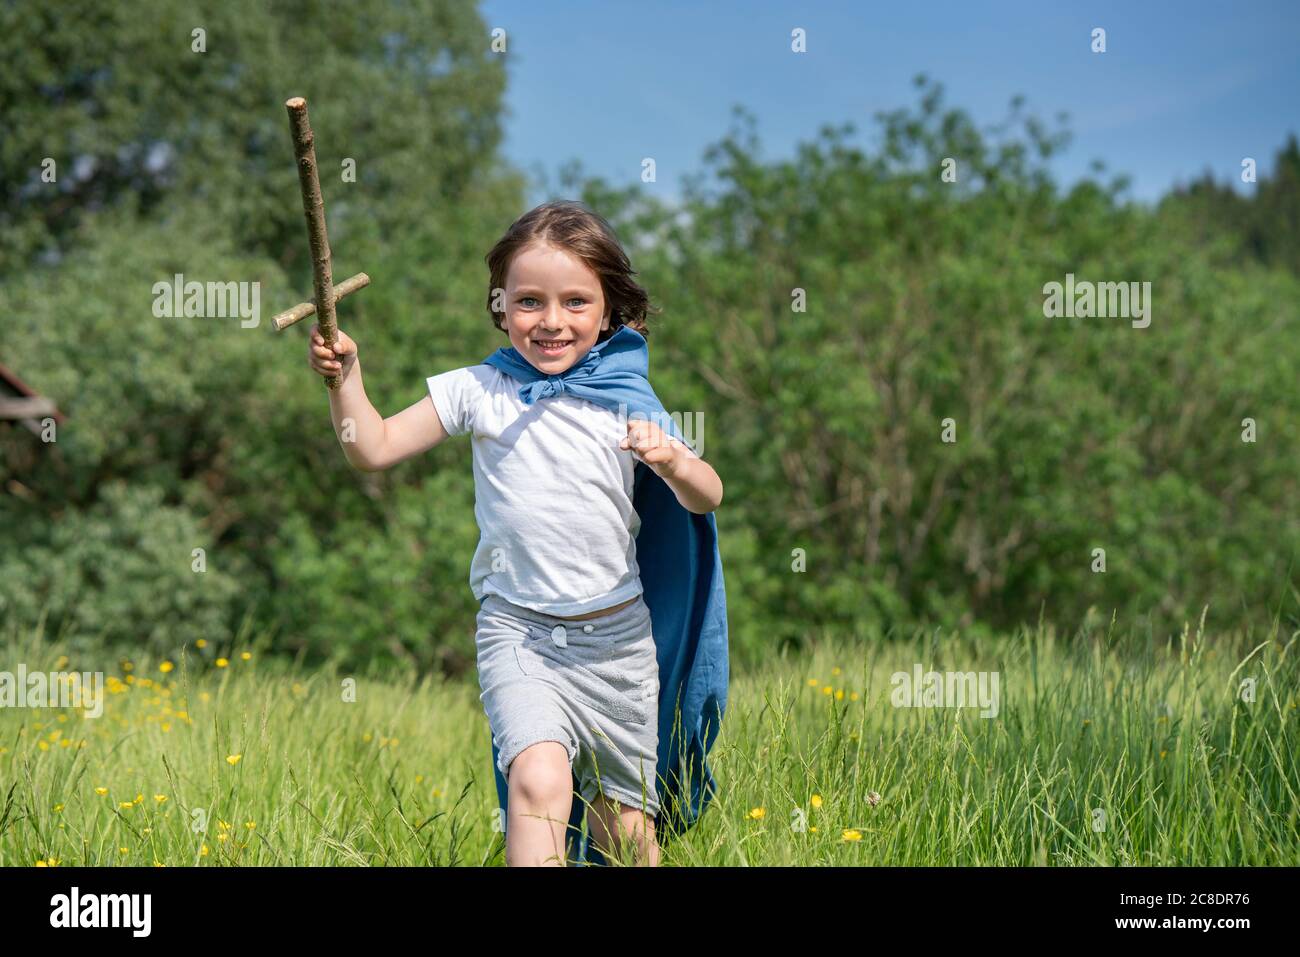 Verspielter Junge trägt Umhang mit Spielzeug Schwert beim Laufen auf Grasland Stockfoto